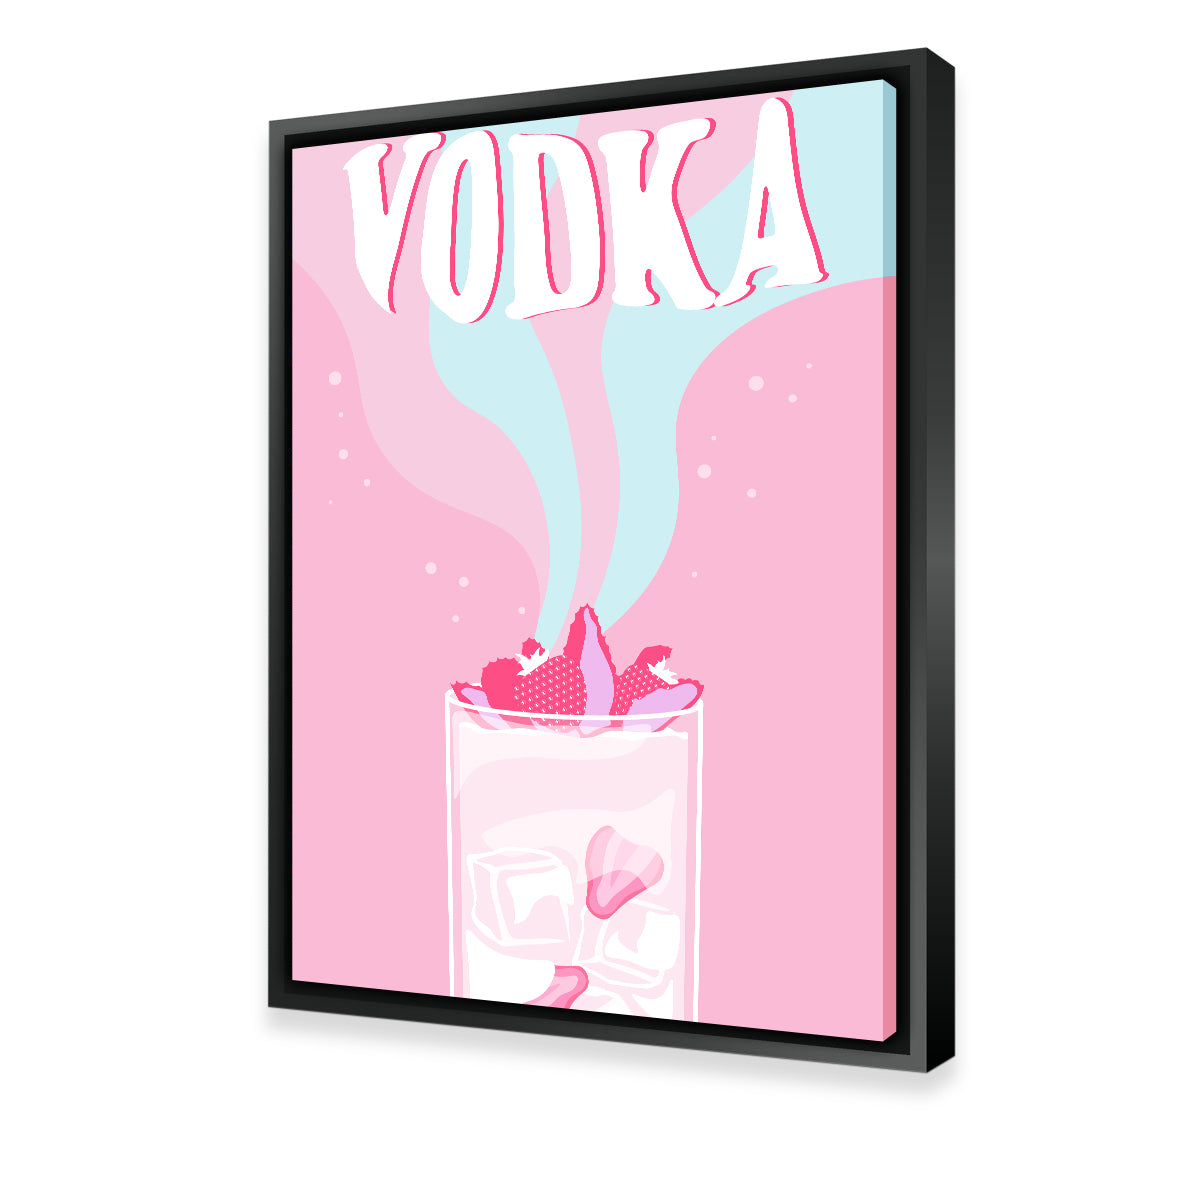 Vodka on Ice